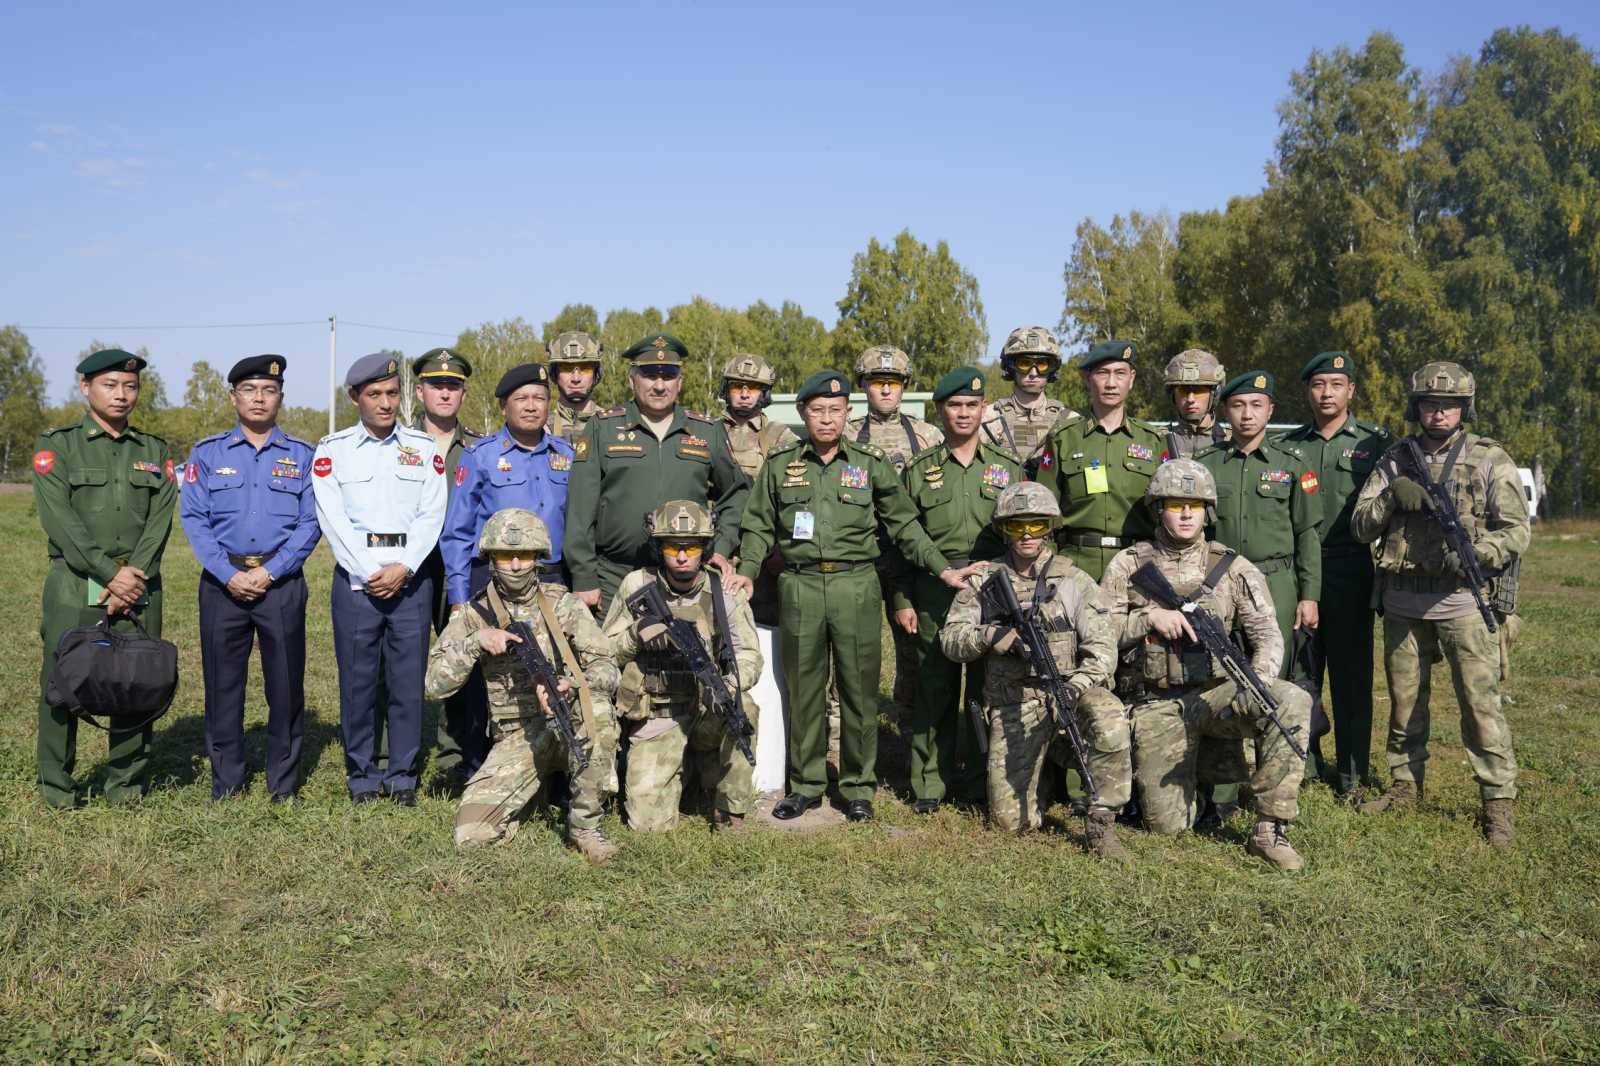 原创缅军副总司令梭温结束访俄返回缅甸,参赛缅军代表团载誉回国